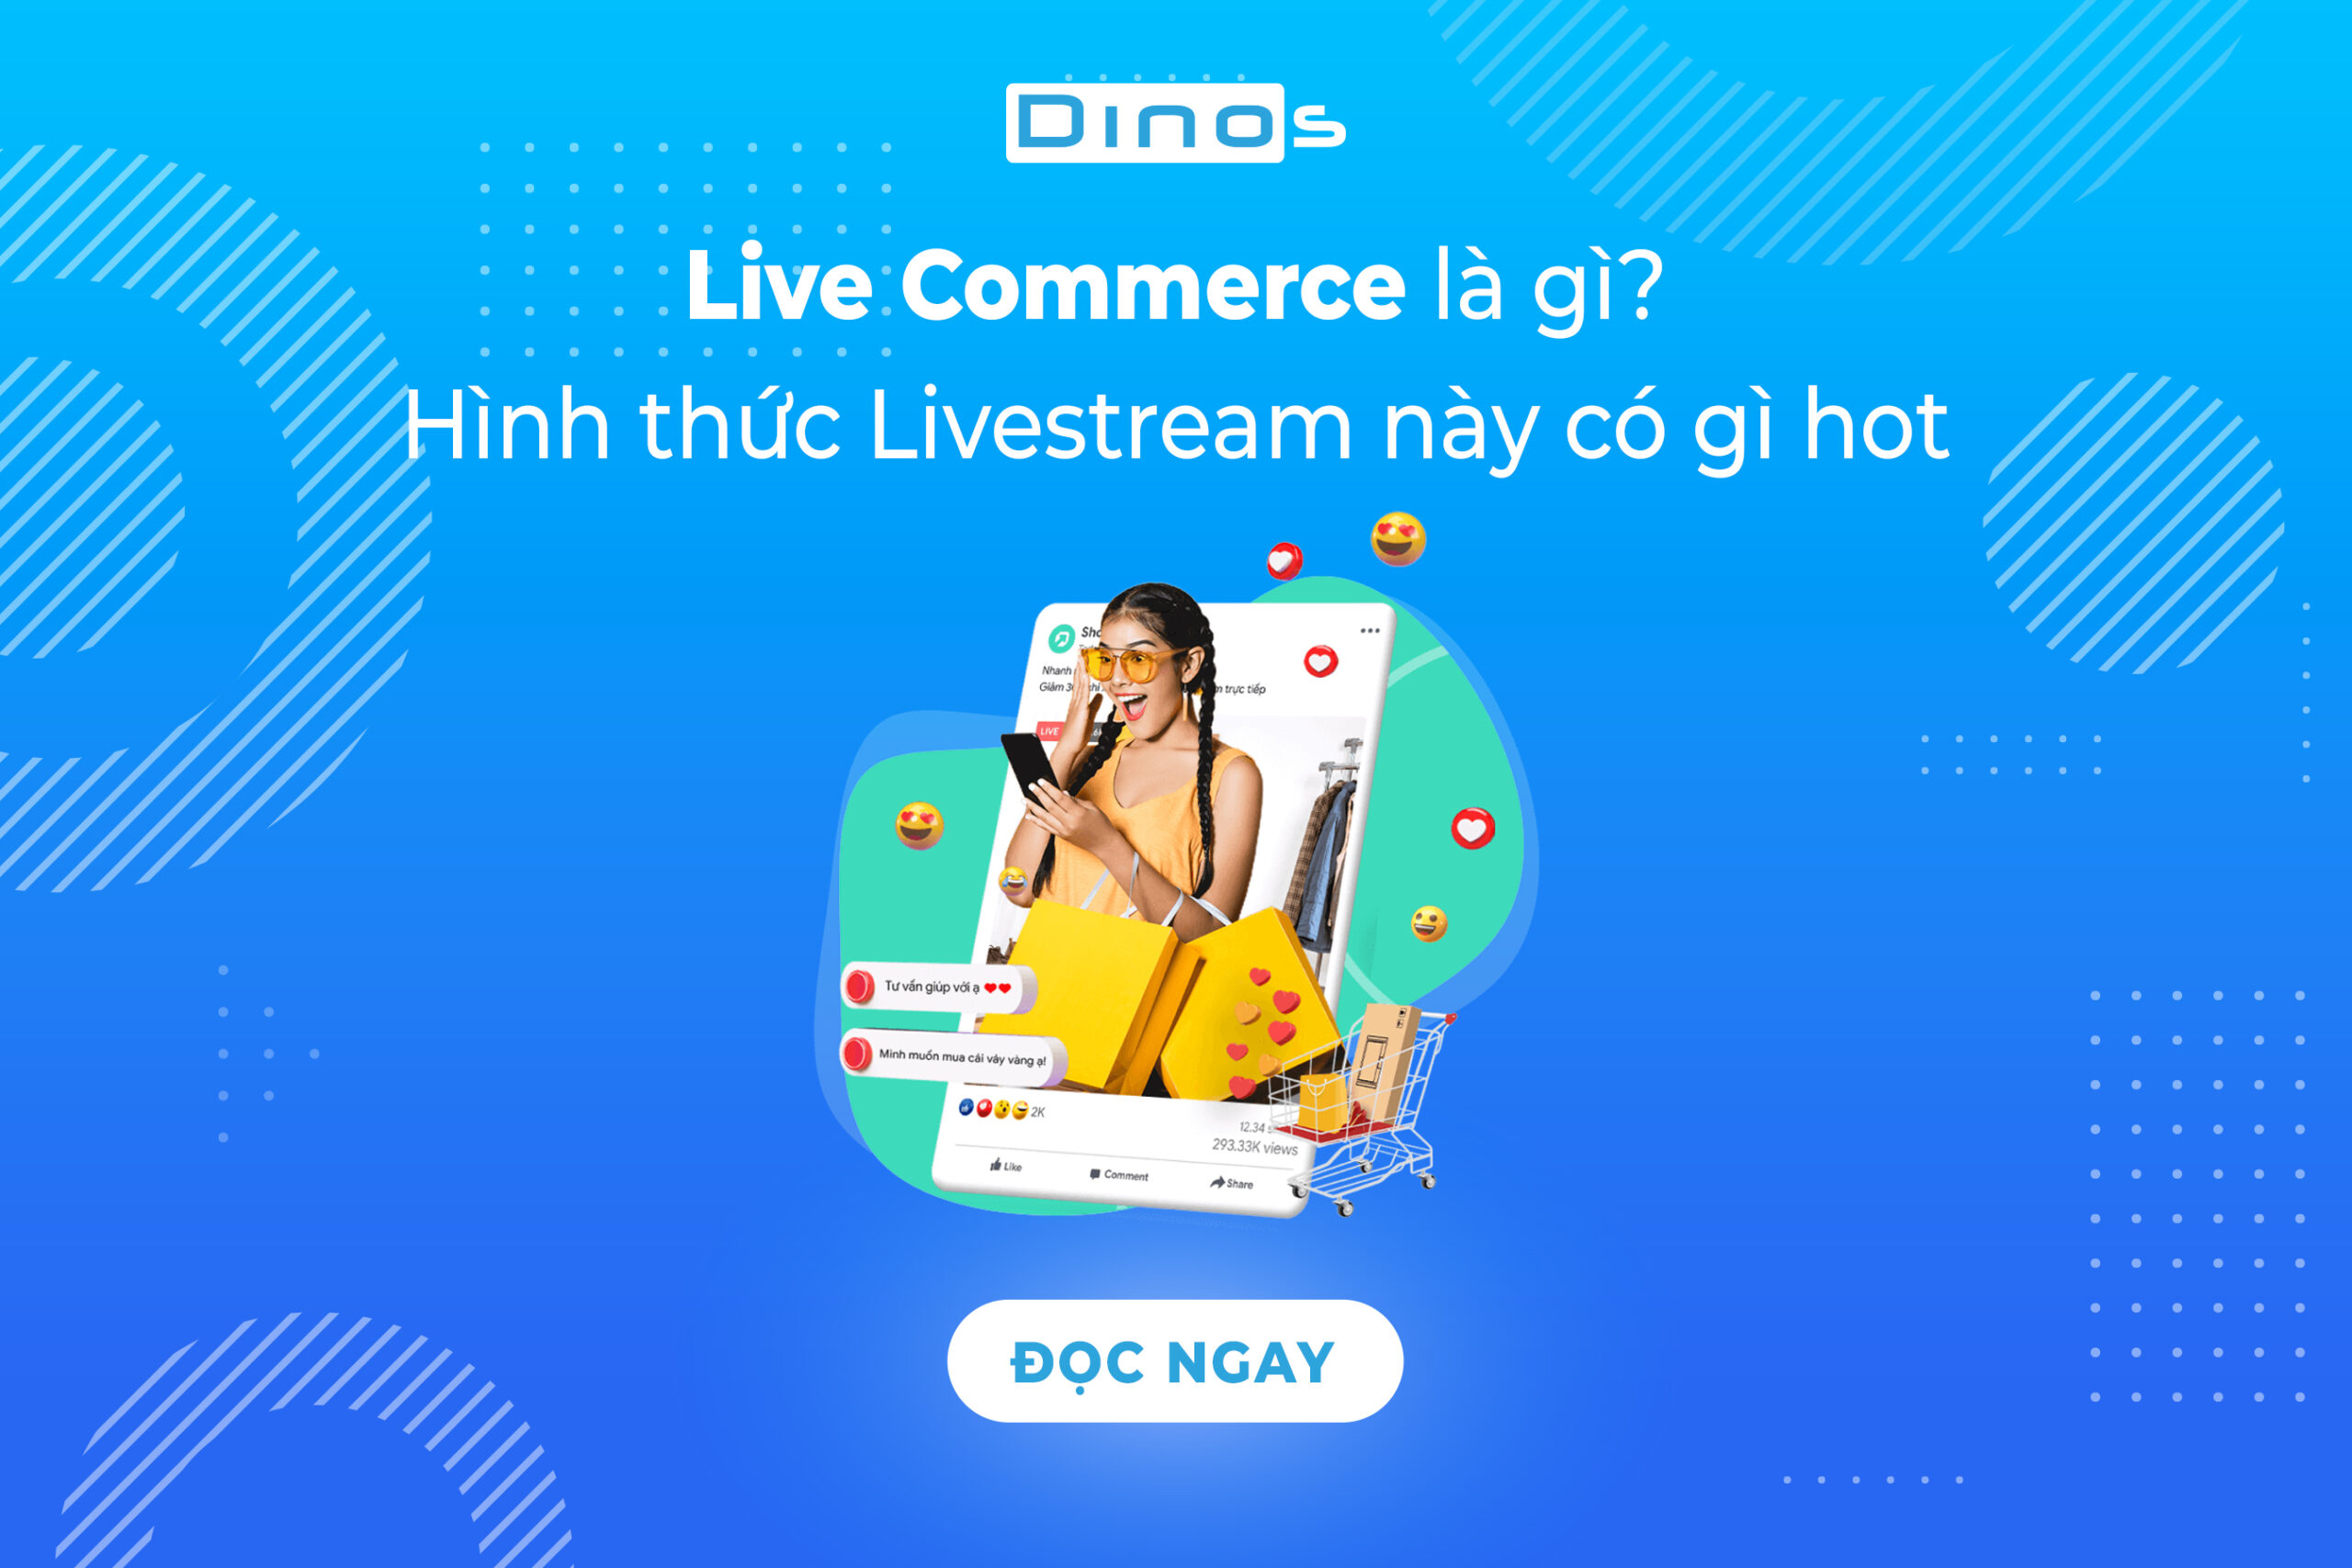 Live Commerce là gì? Hình thức livestream này có gì hot